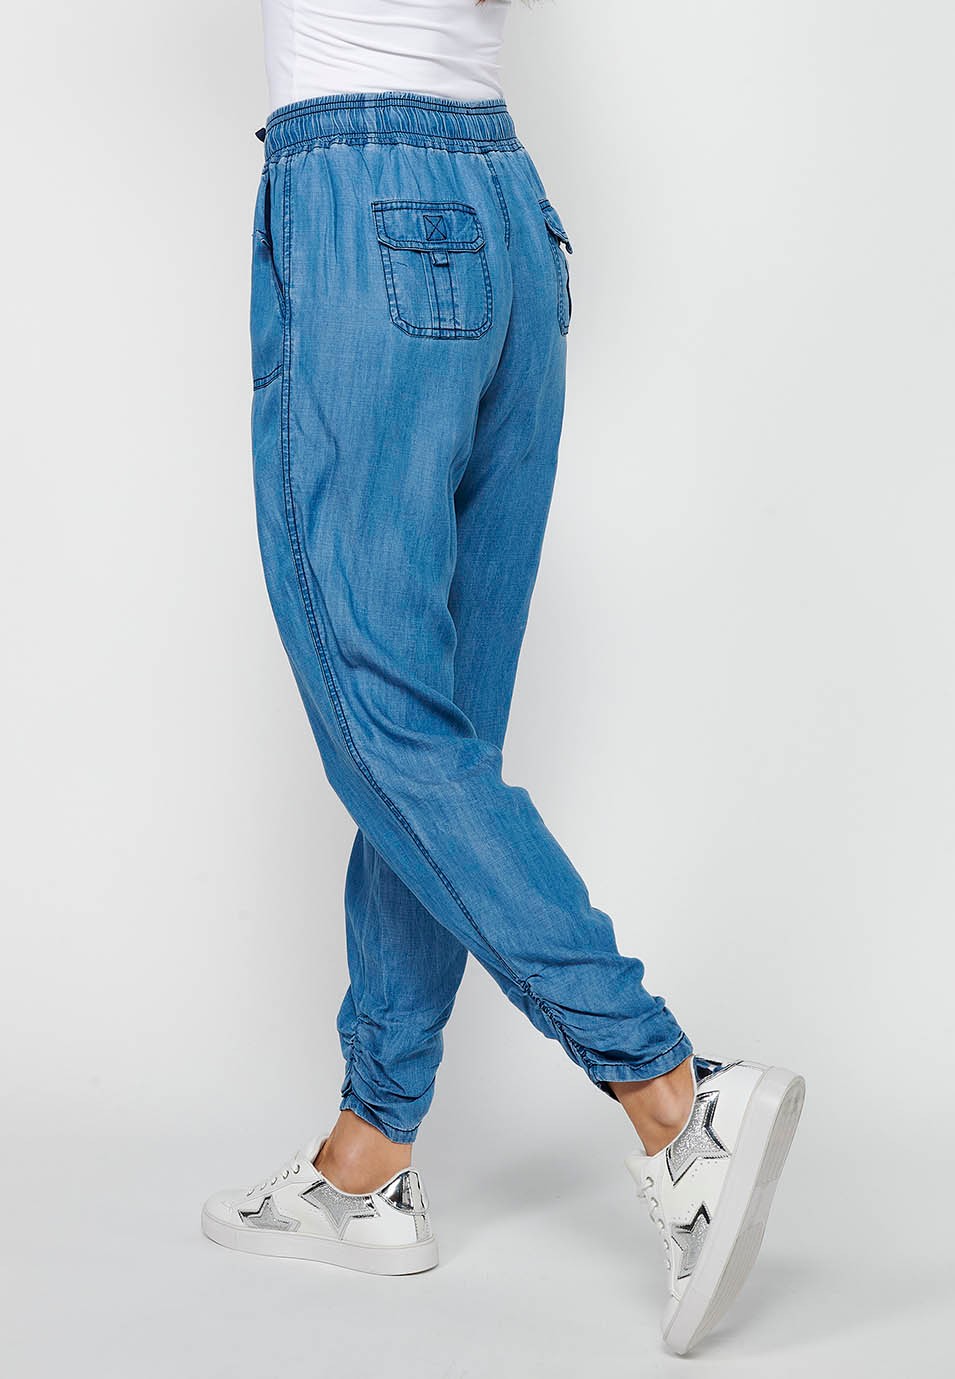 Pantalón largo jogger con Acabado rizado y Cintura engomada con Cuatro bolsillos, dos traseros con solapa de Color Azul para Mujer 6